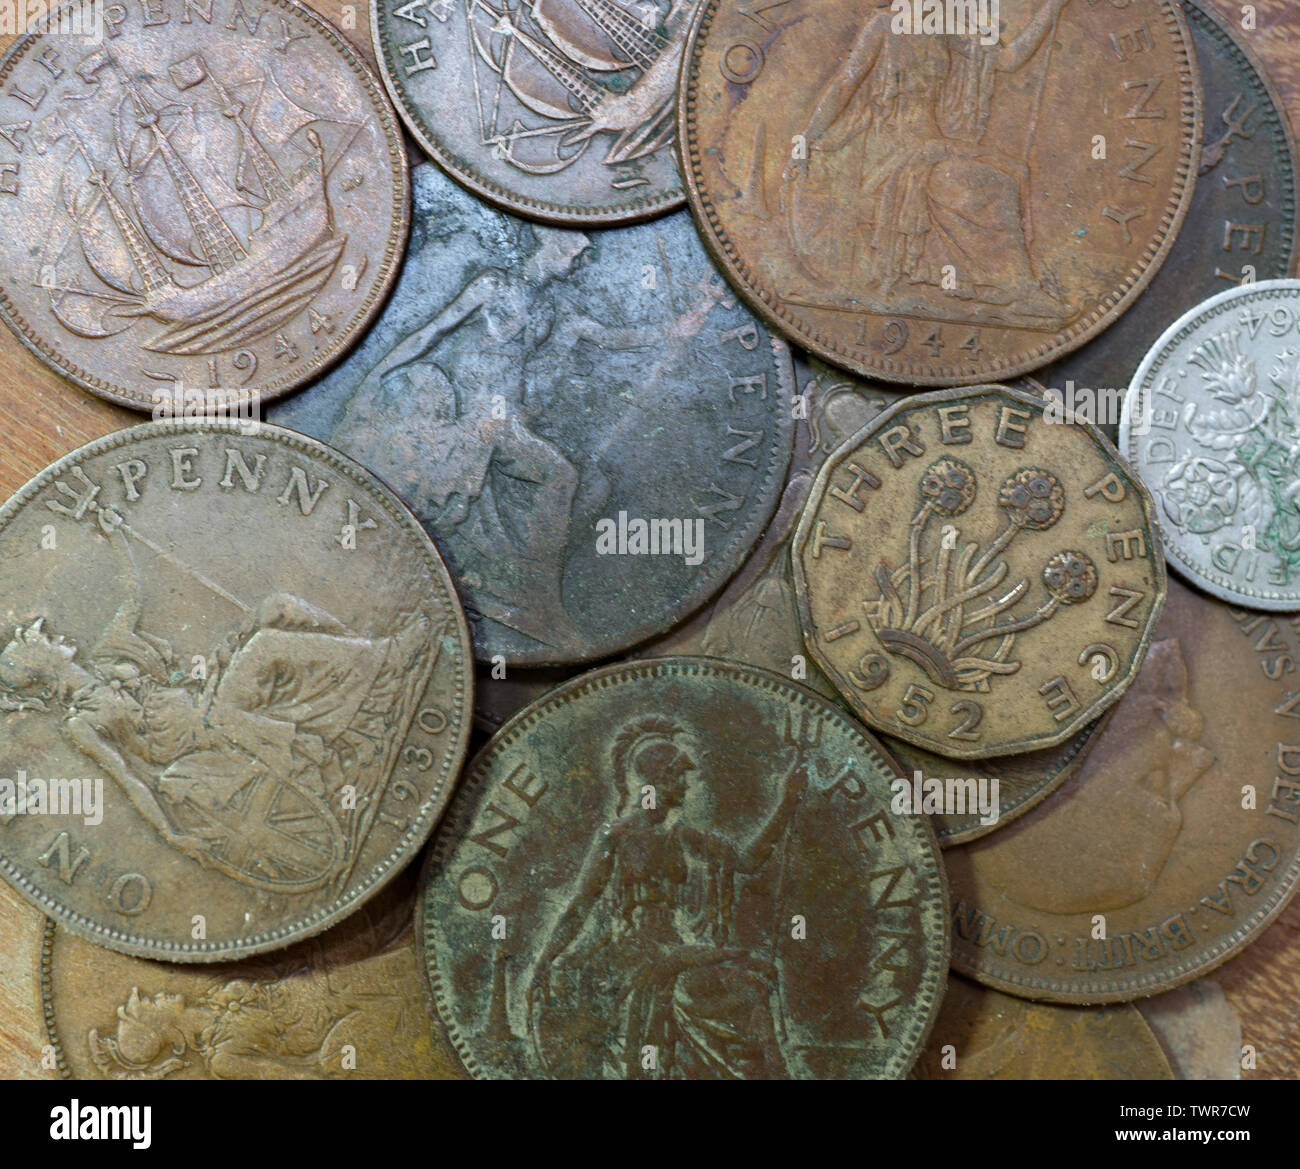 Alte britische Münzen, einen Cent Münzen. threepenny Bit, halfpenny und sixpence. Britische Inseln. Stockfoto